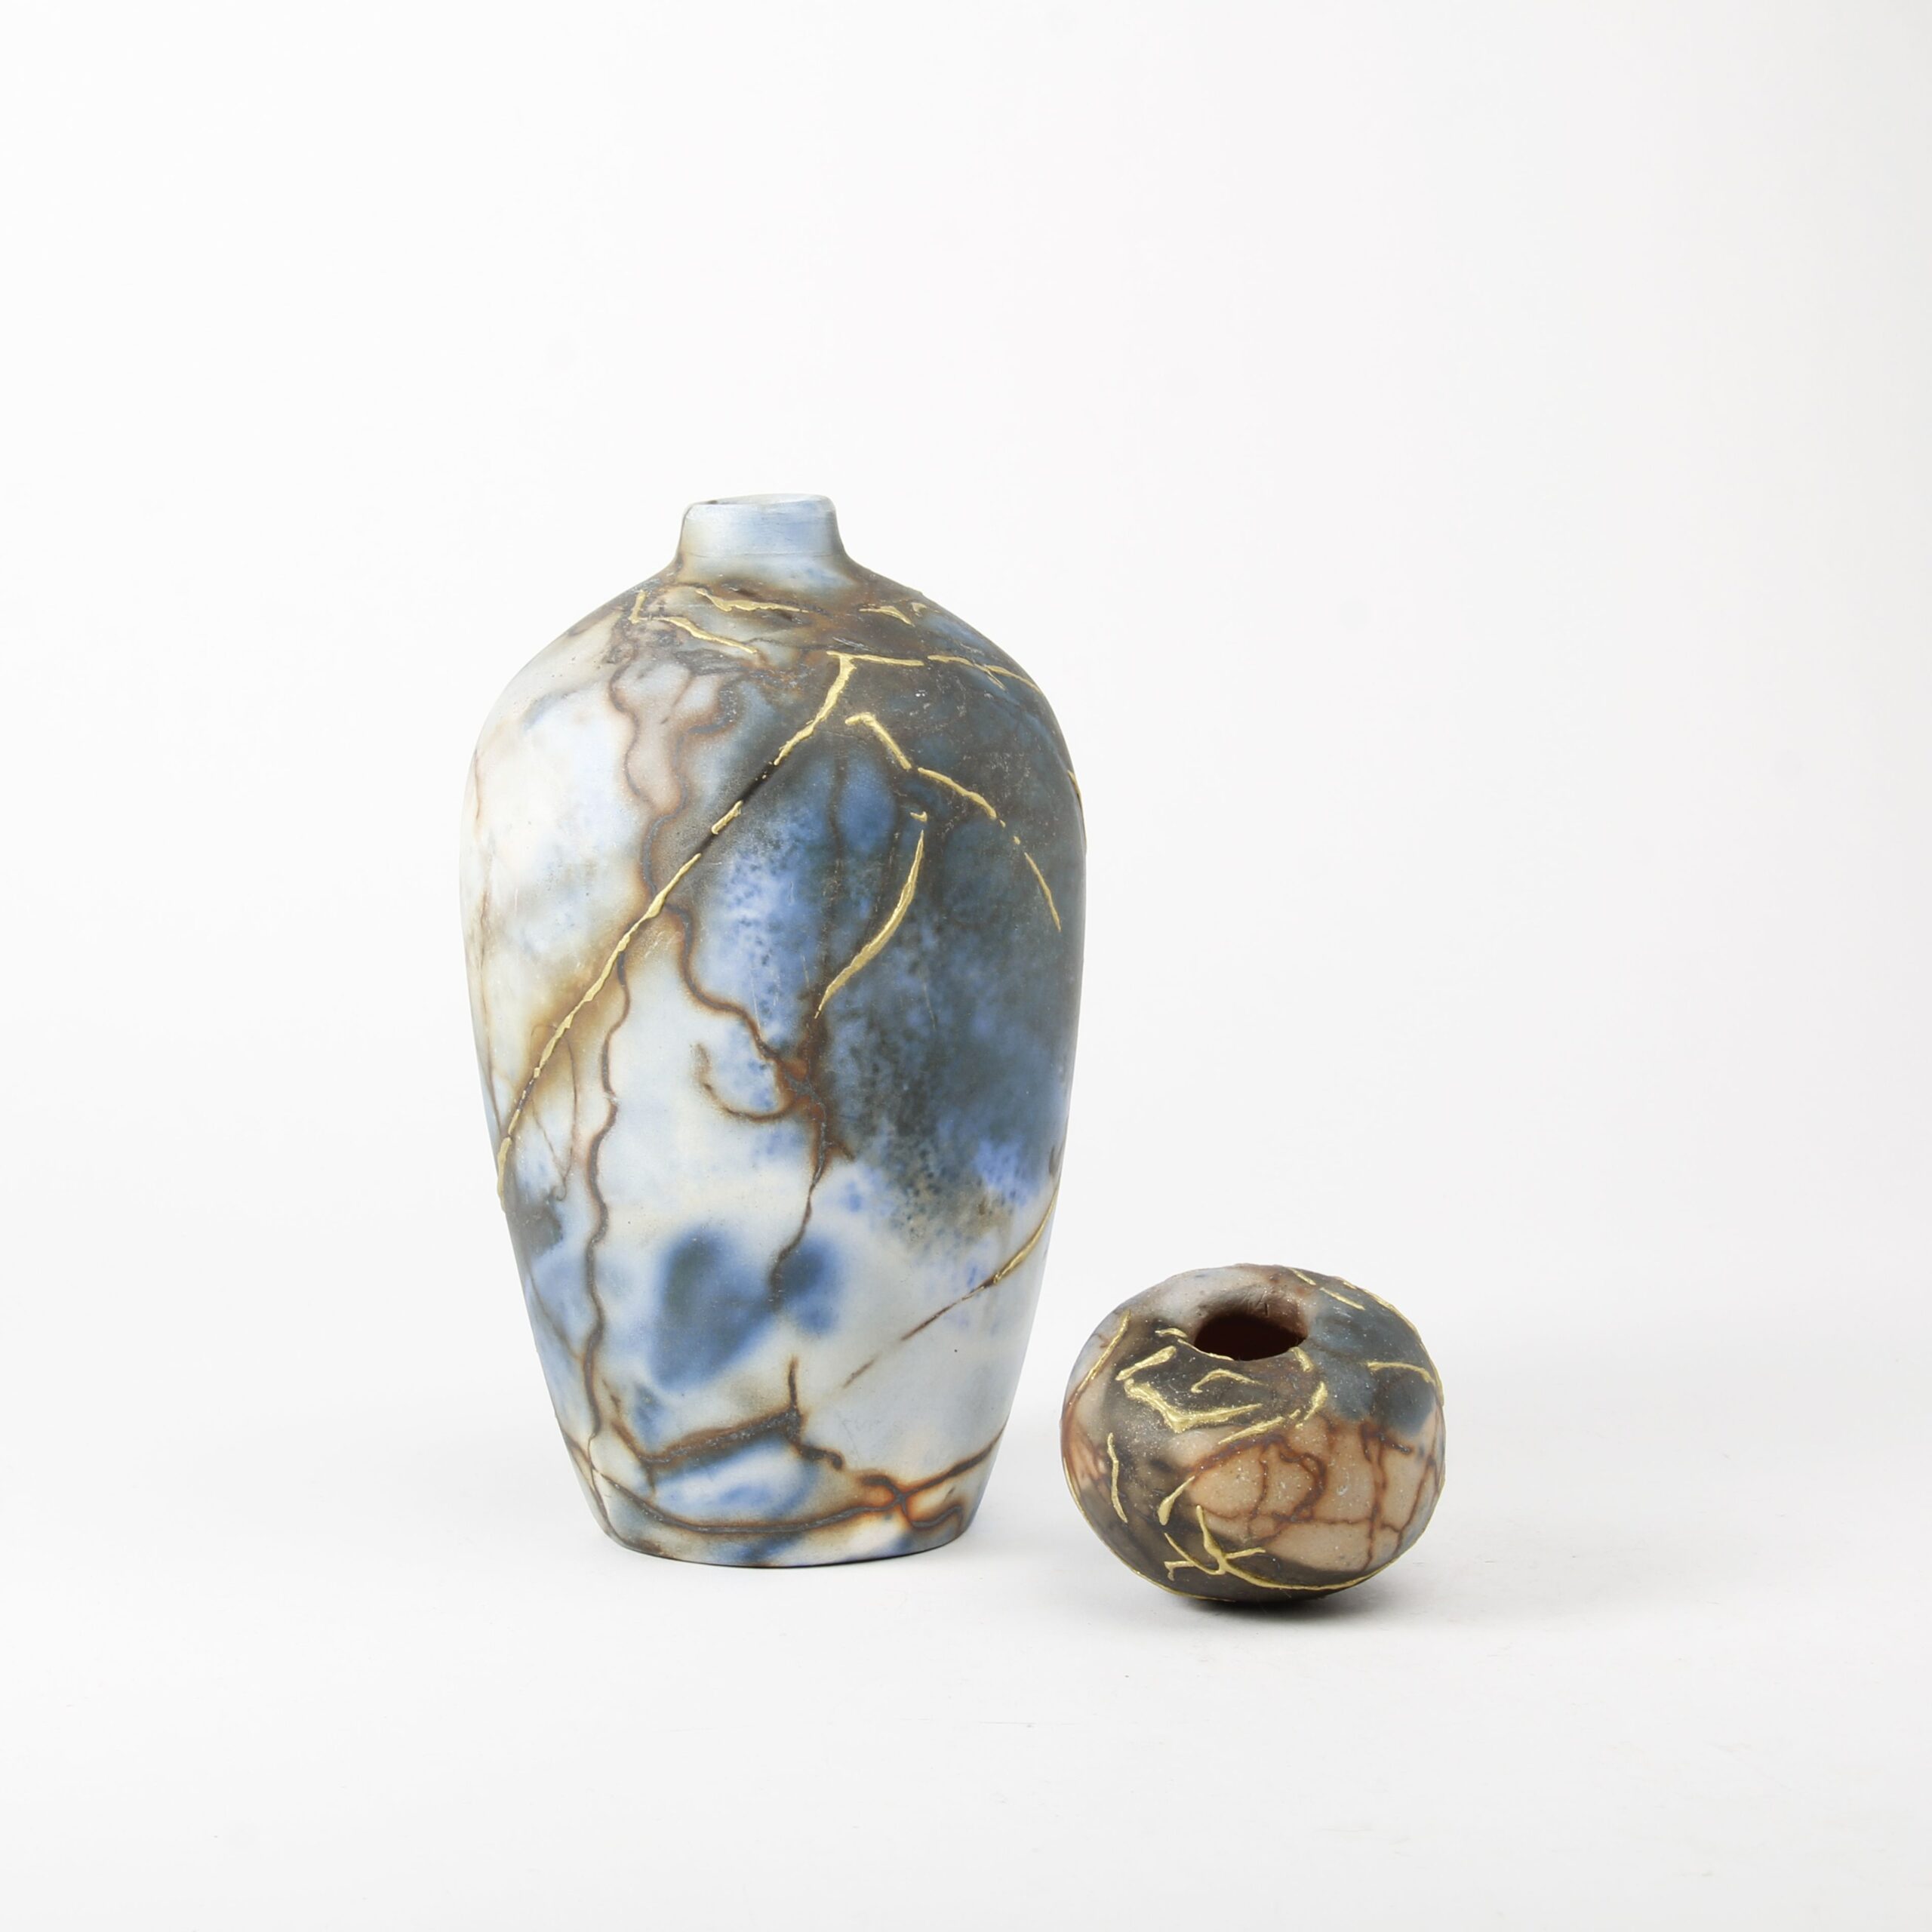 Alison Brannen: Medium Classic Urn Product Image 5 of 5